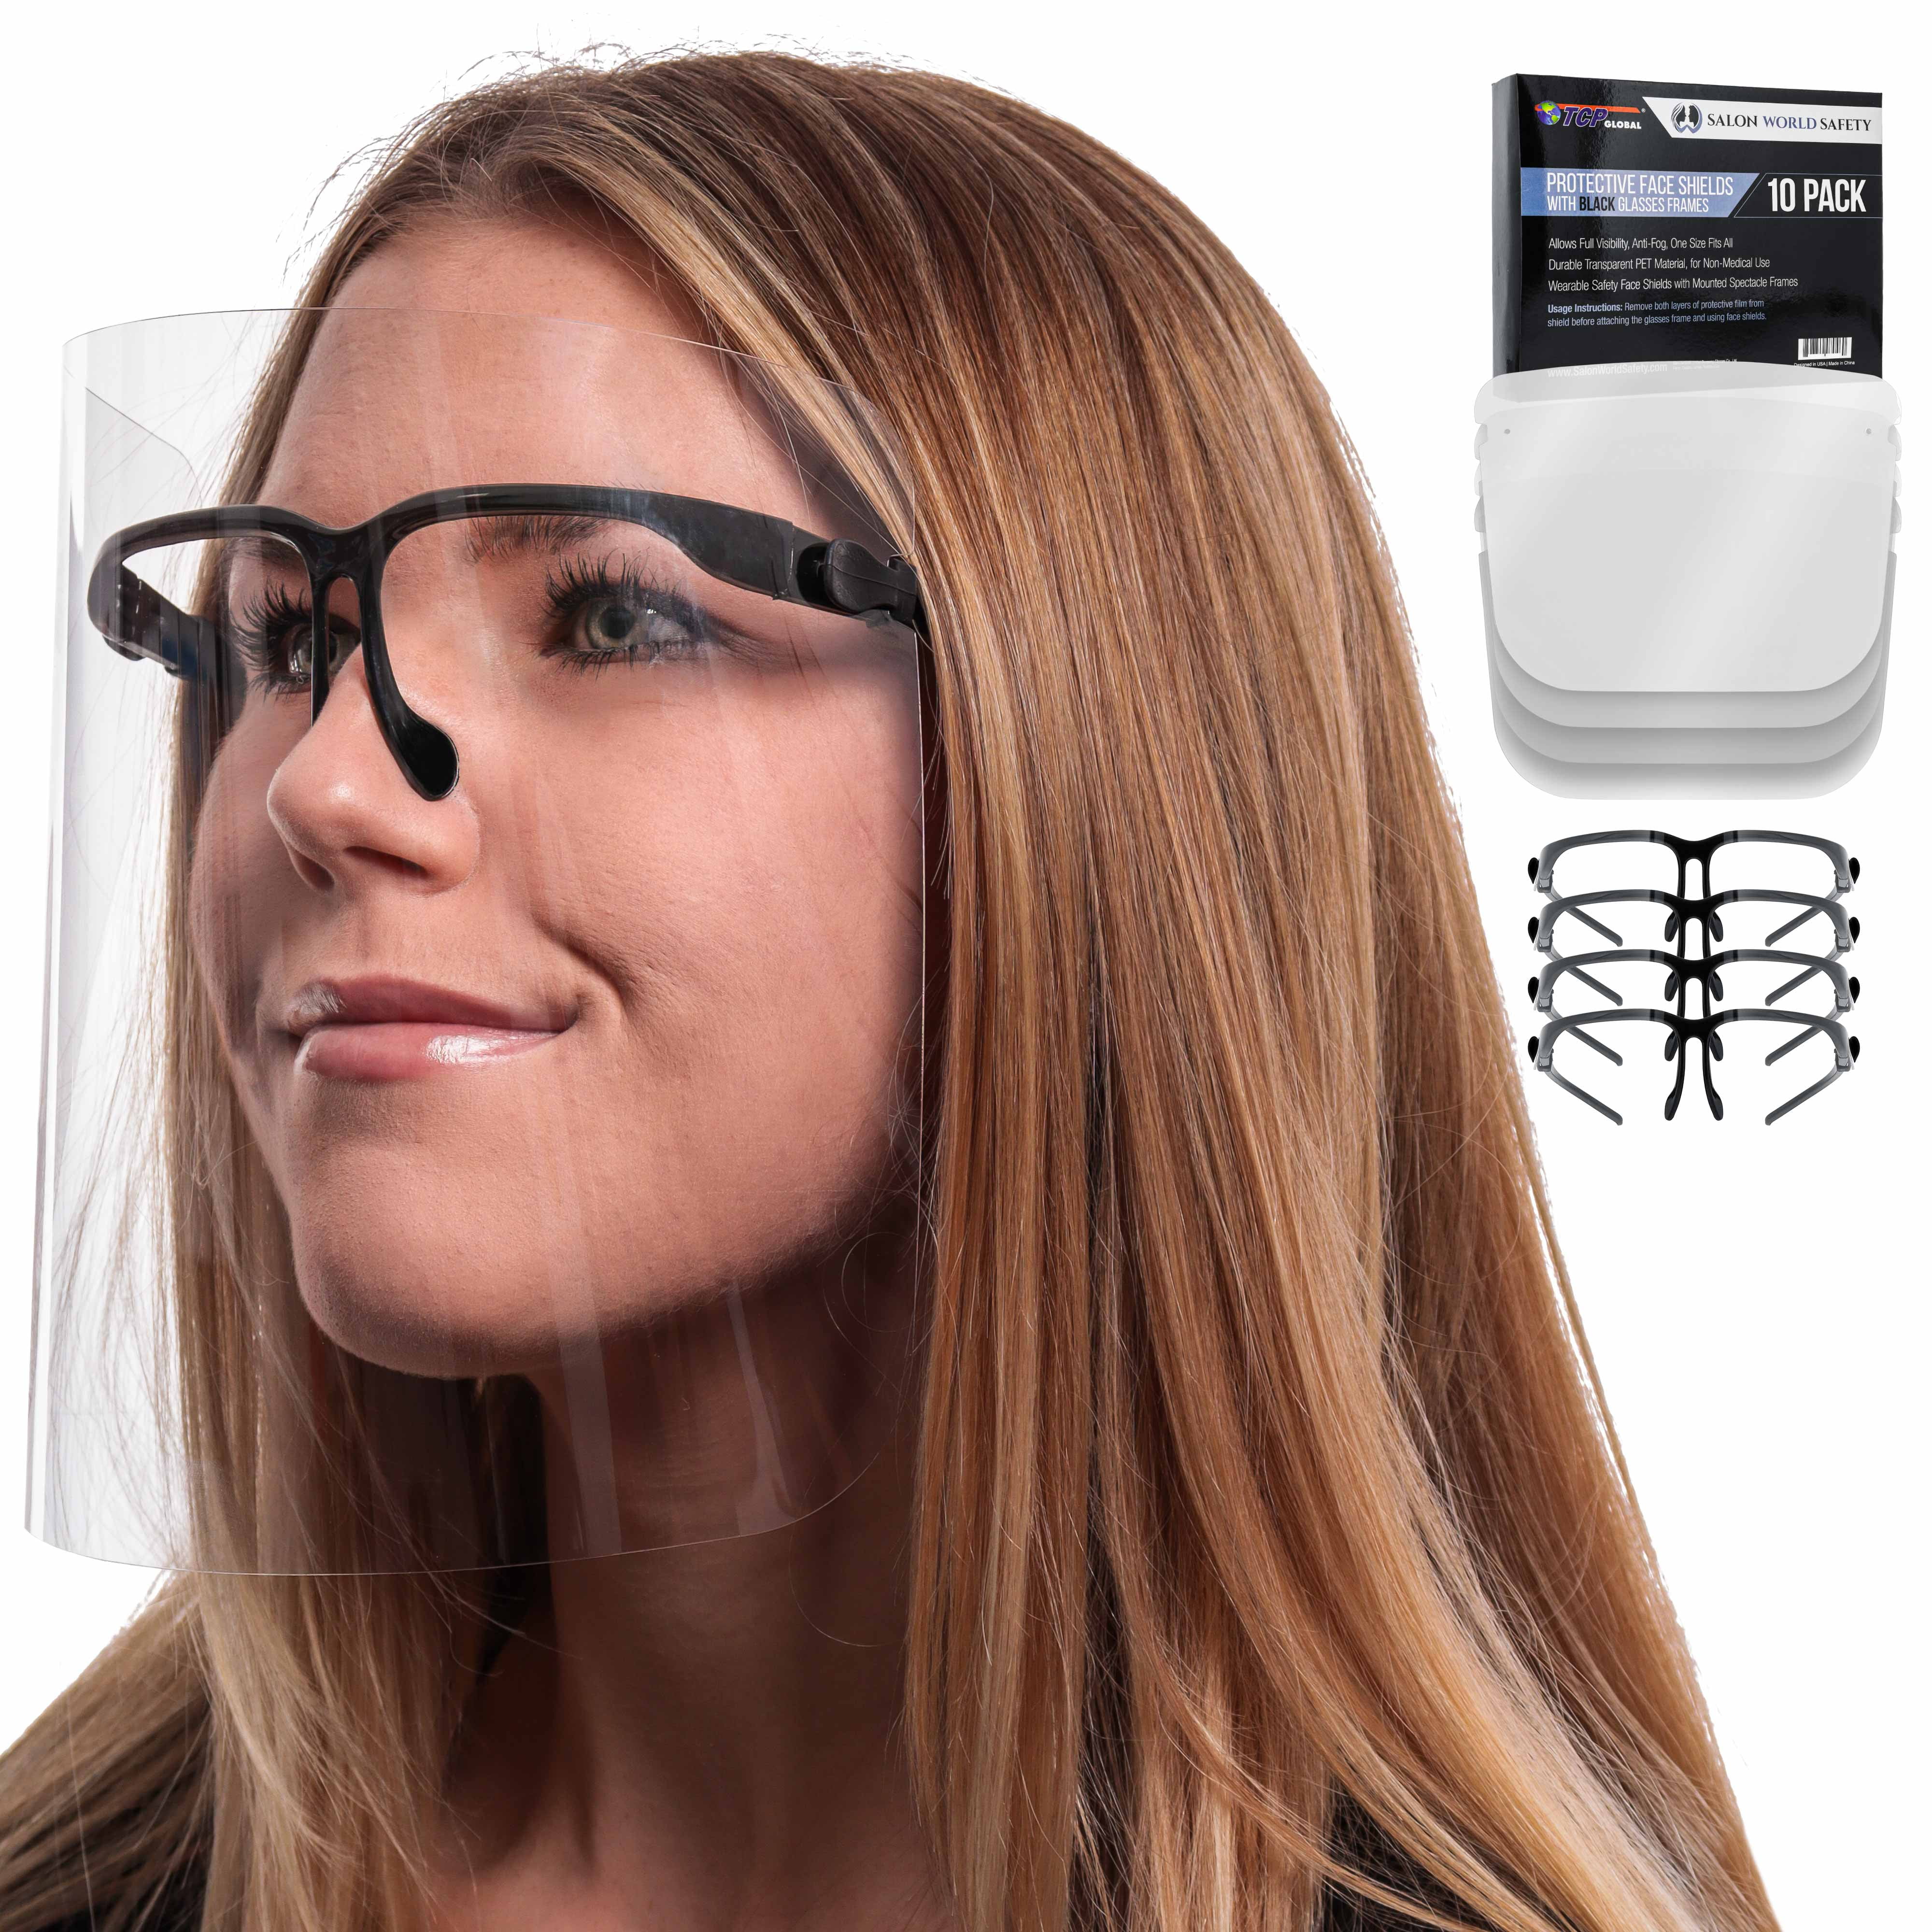 Full Face Covering Anti-fog Safety Shield Tool free face Mask Glasses Eye Helmet 